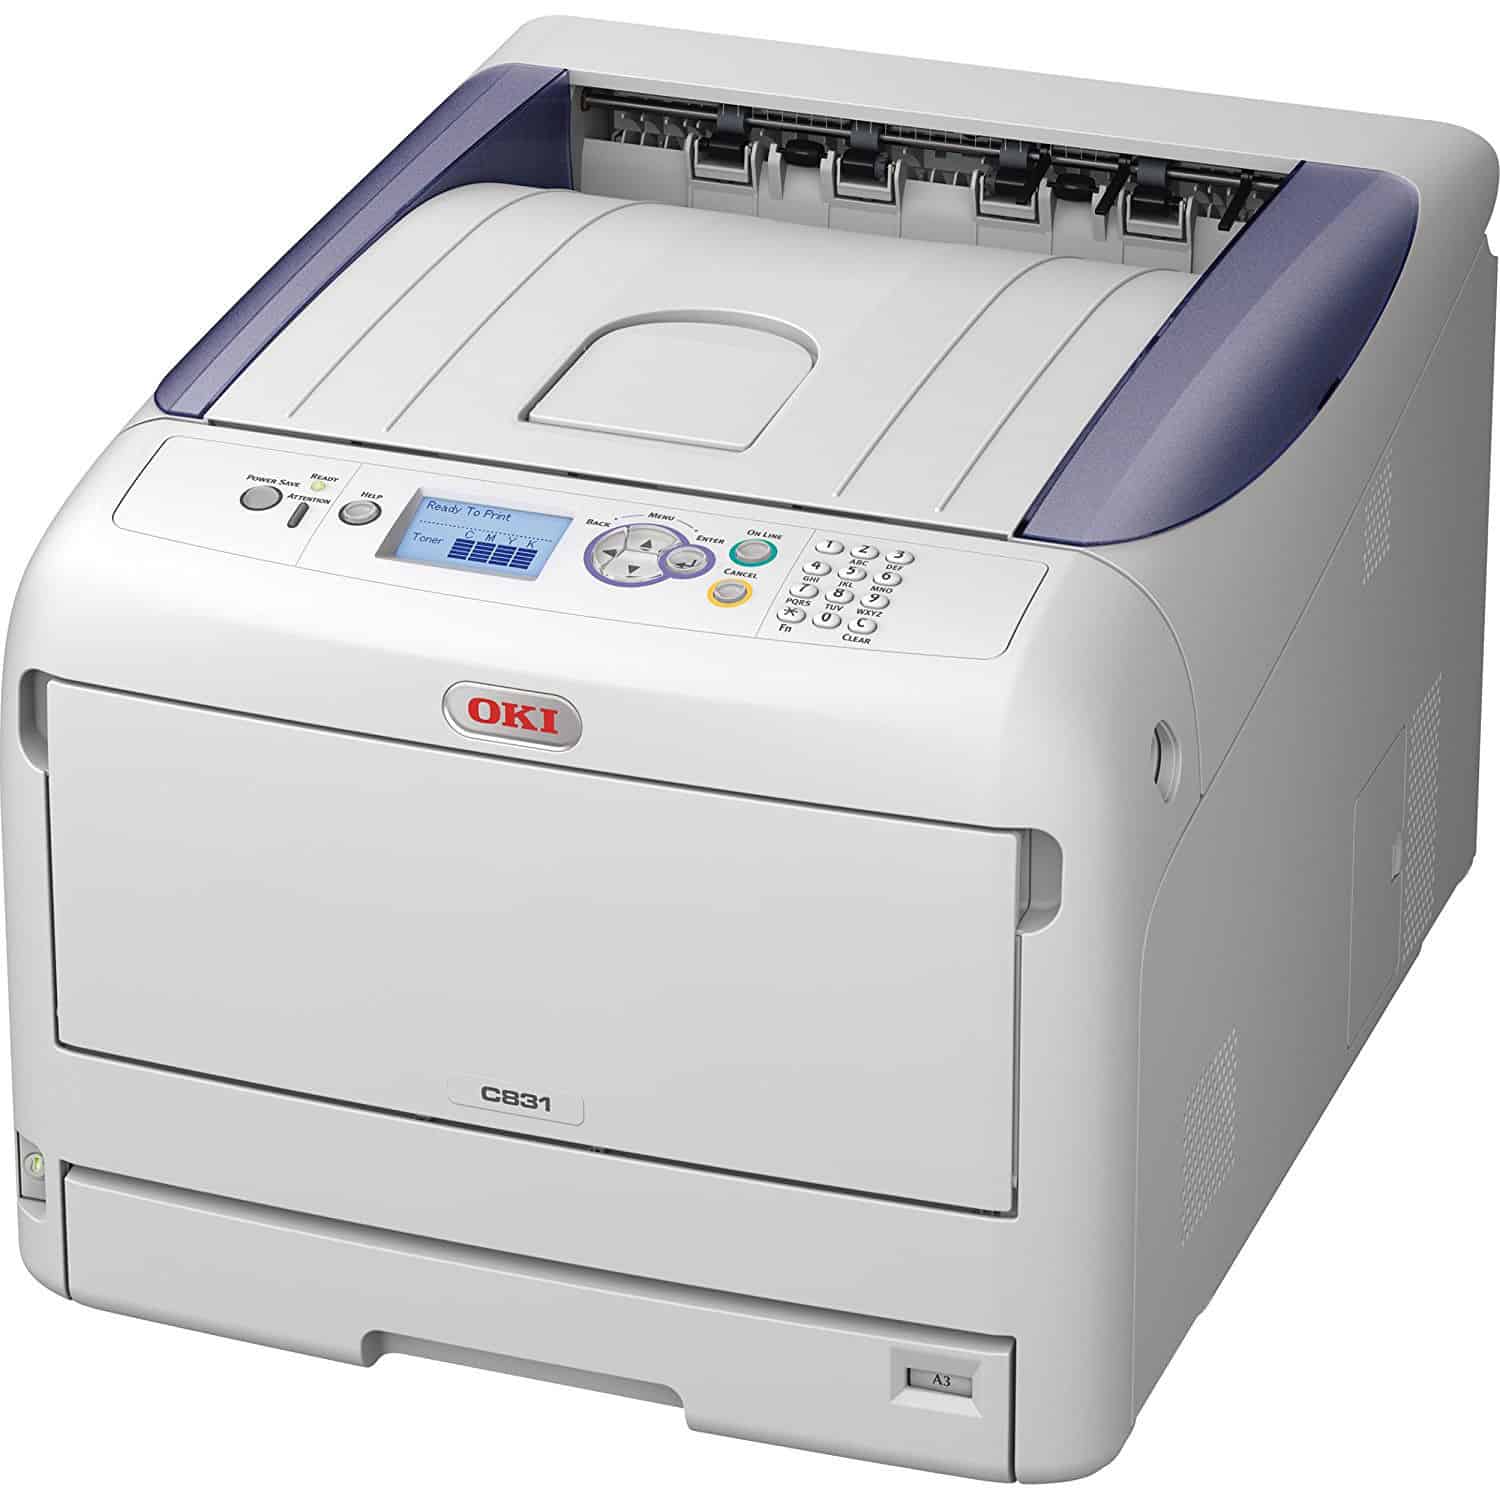 01318801 Oki C831n A3 LED Colour Laser Printer  - Refurbished